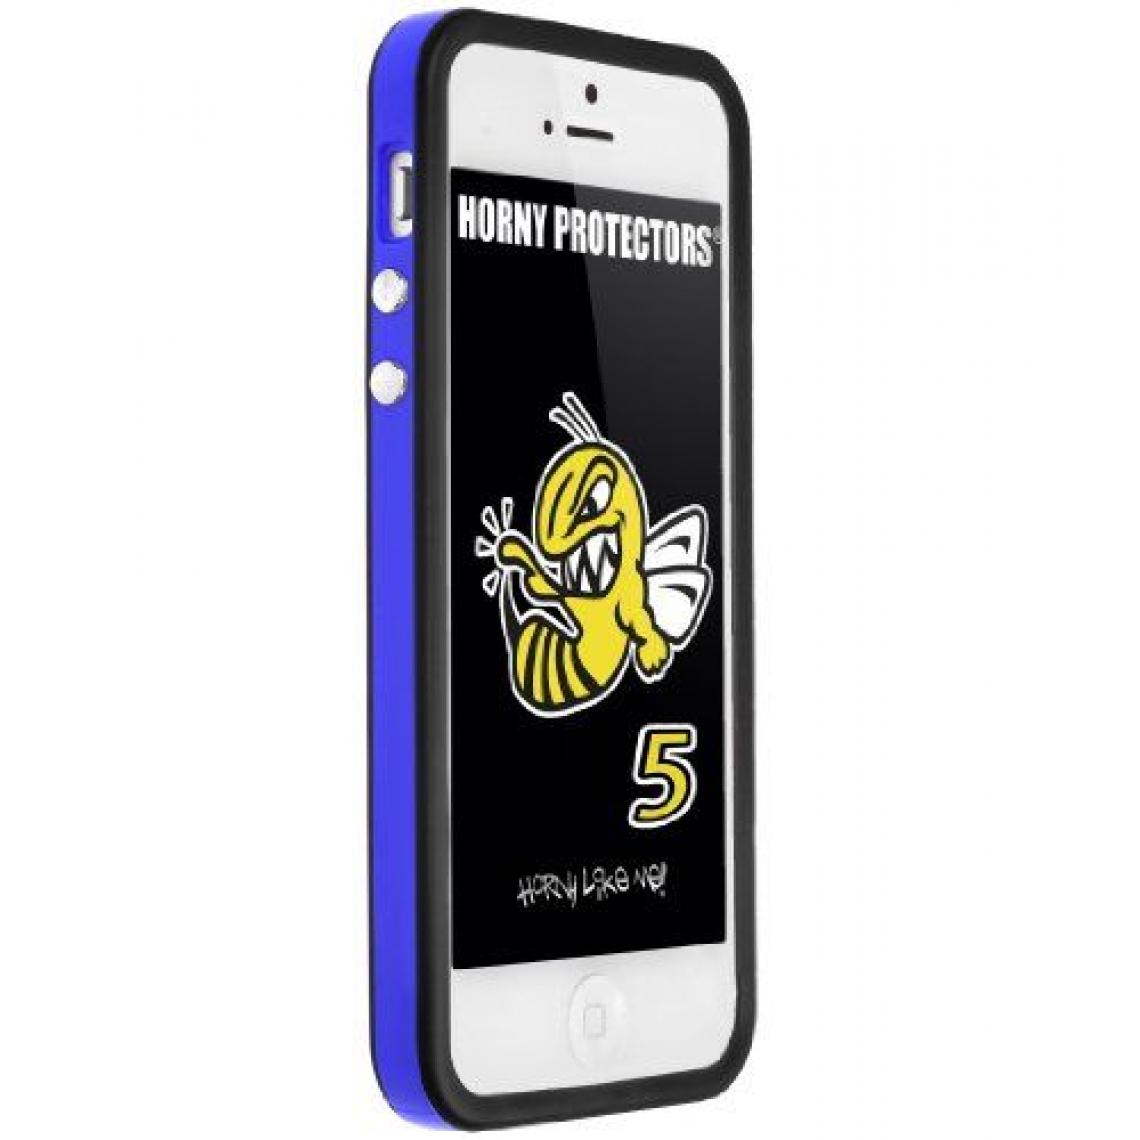 Inconnu - Horny Protectors Étui de protection anti-chocs pour iPhone 5 Multicolore - Coque, étui smartphone